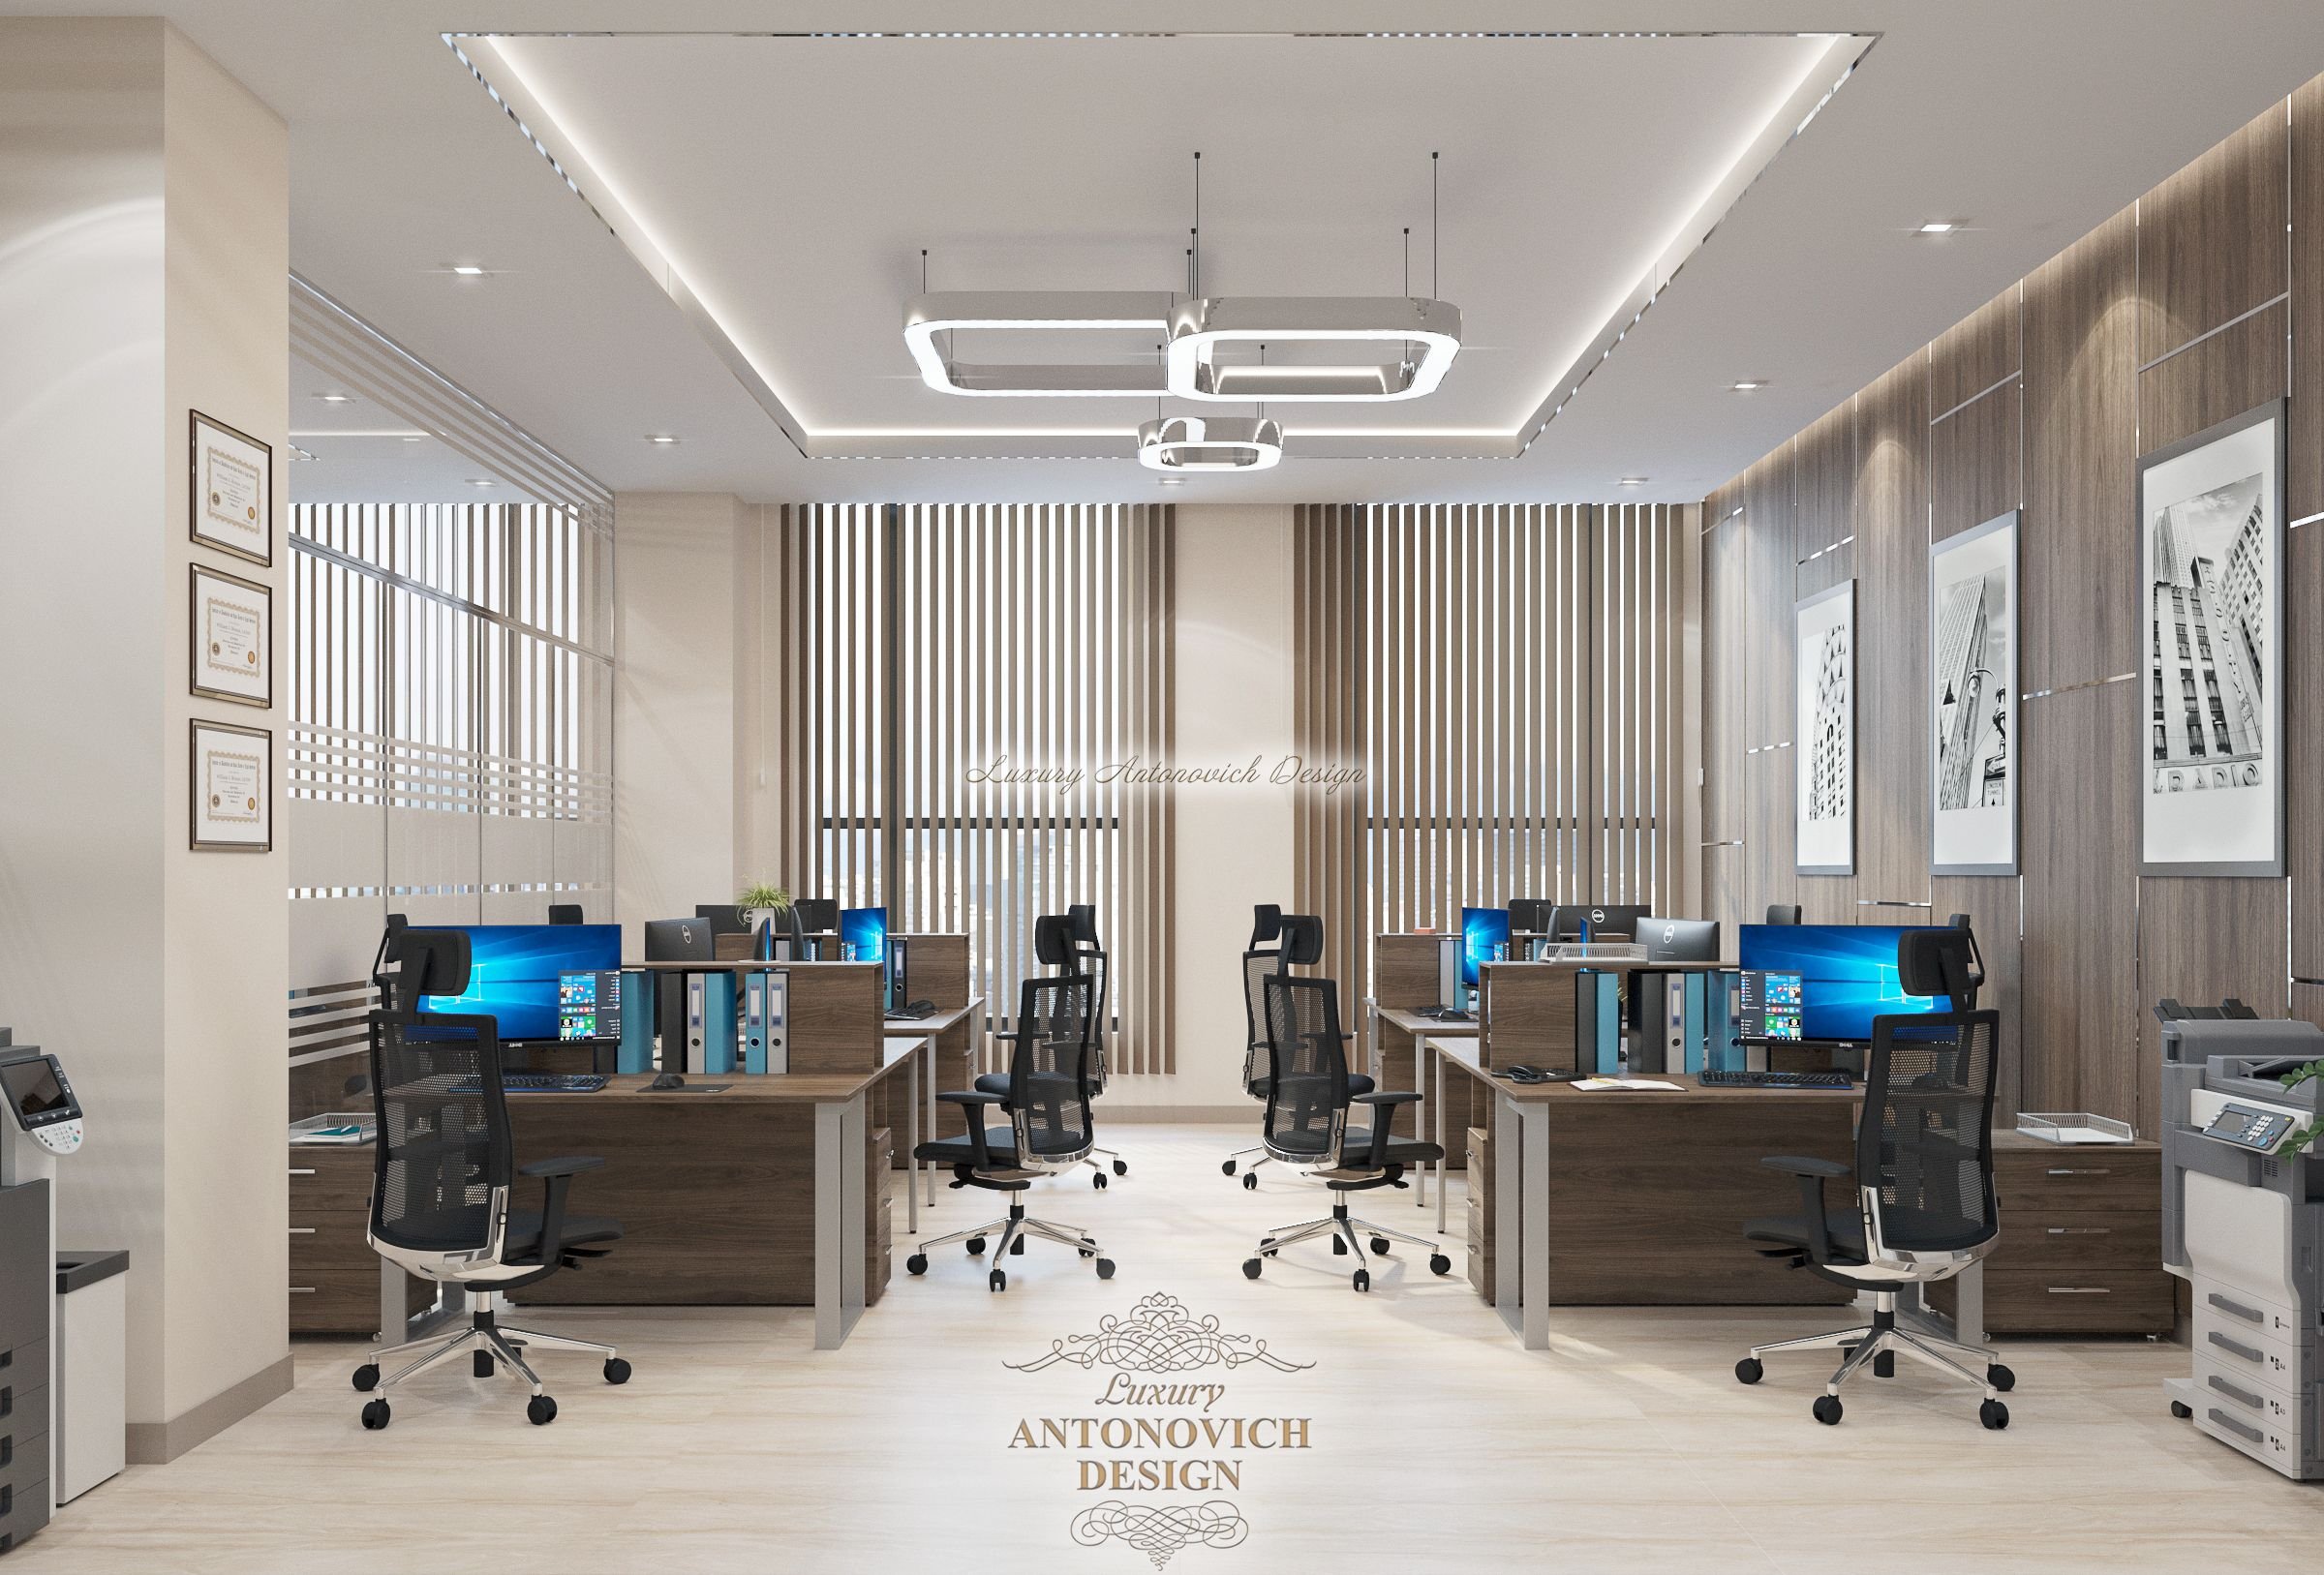 Стильные Помещения 5 офиса, Студия Luxury Antonovich Design